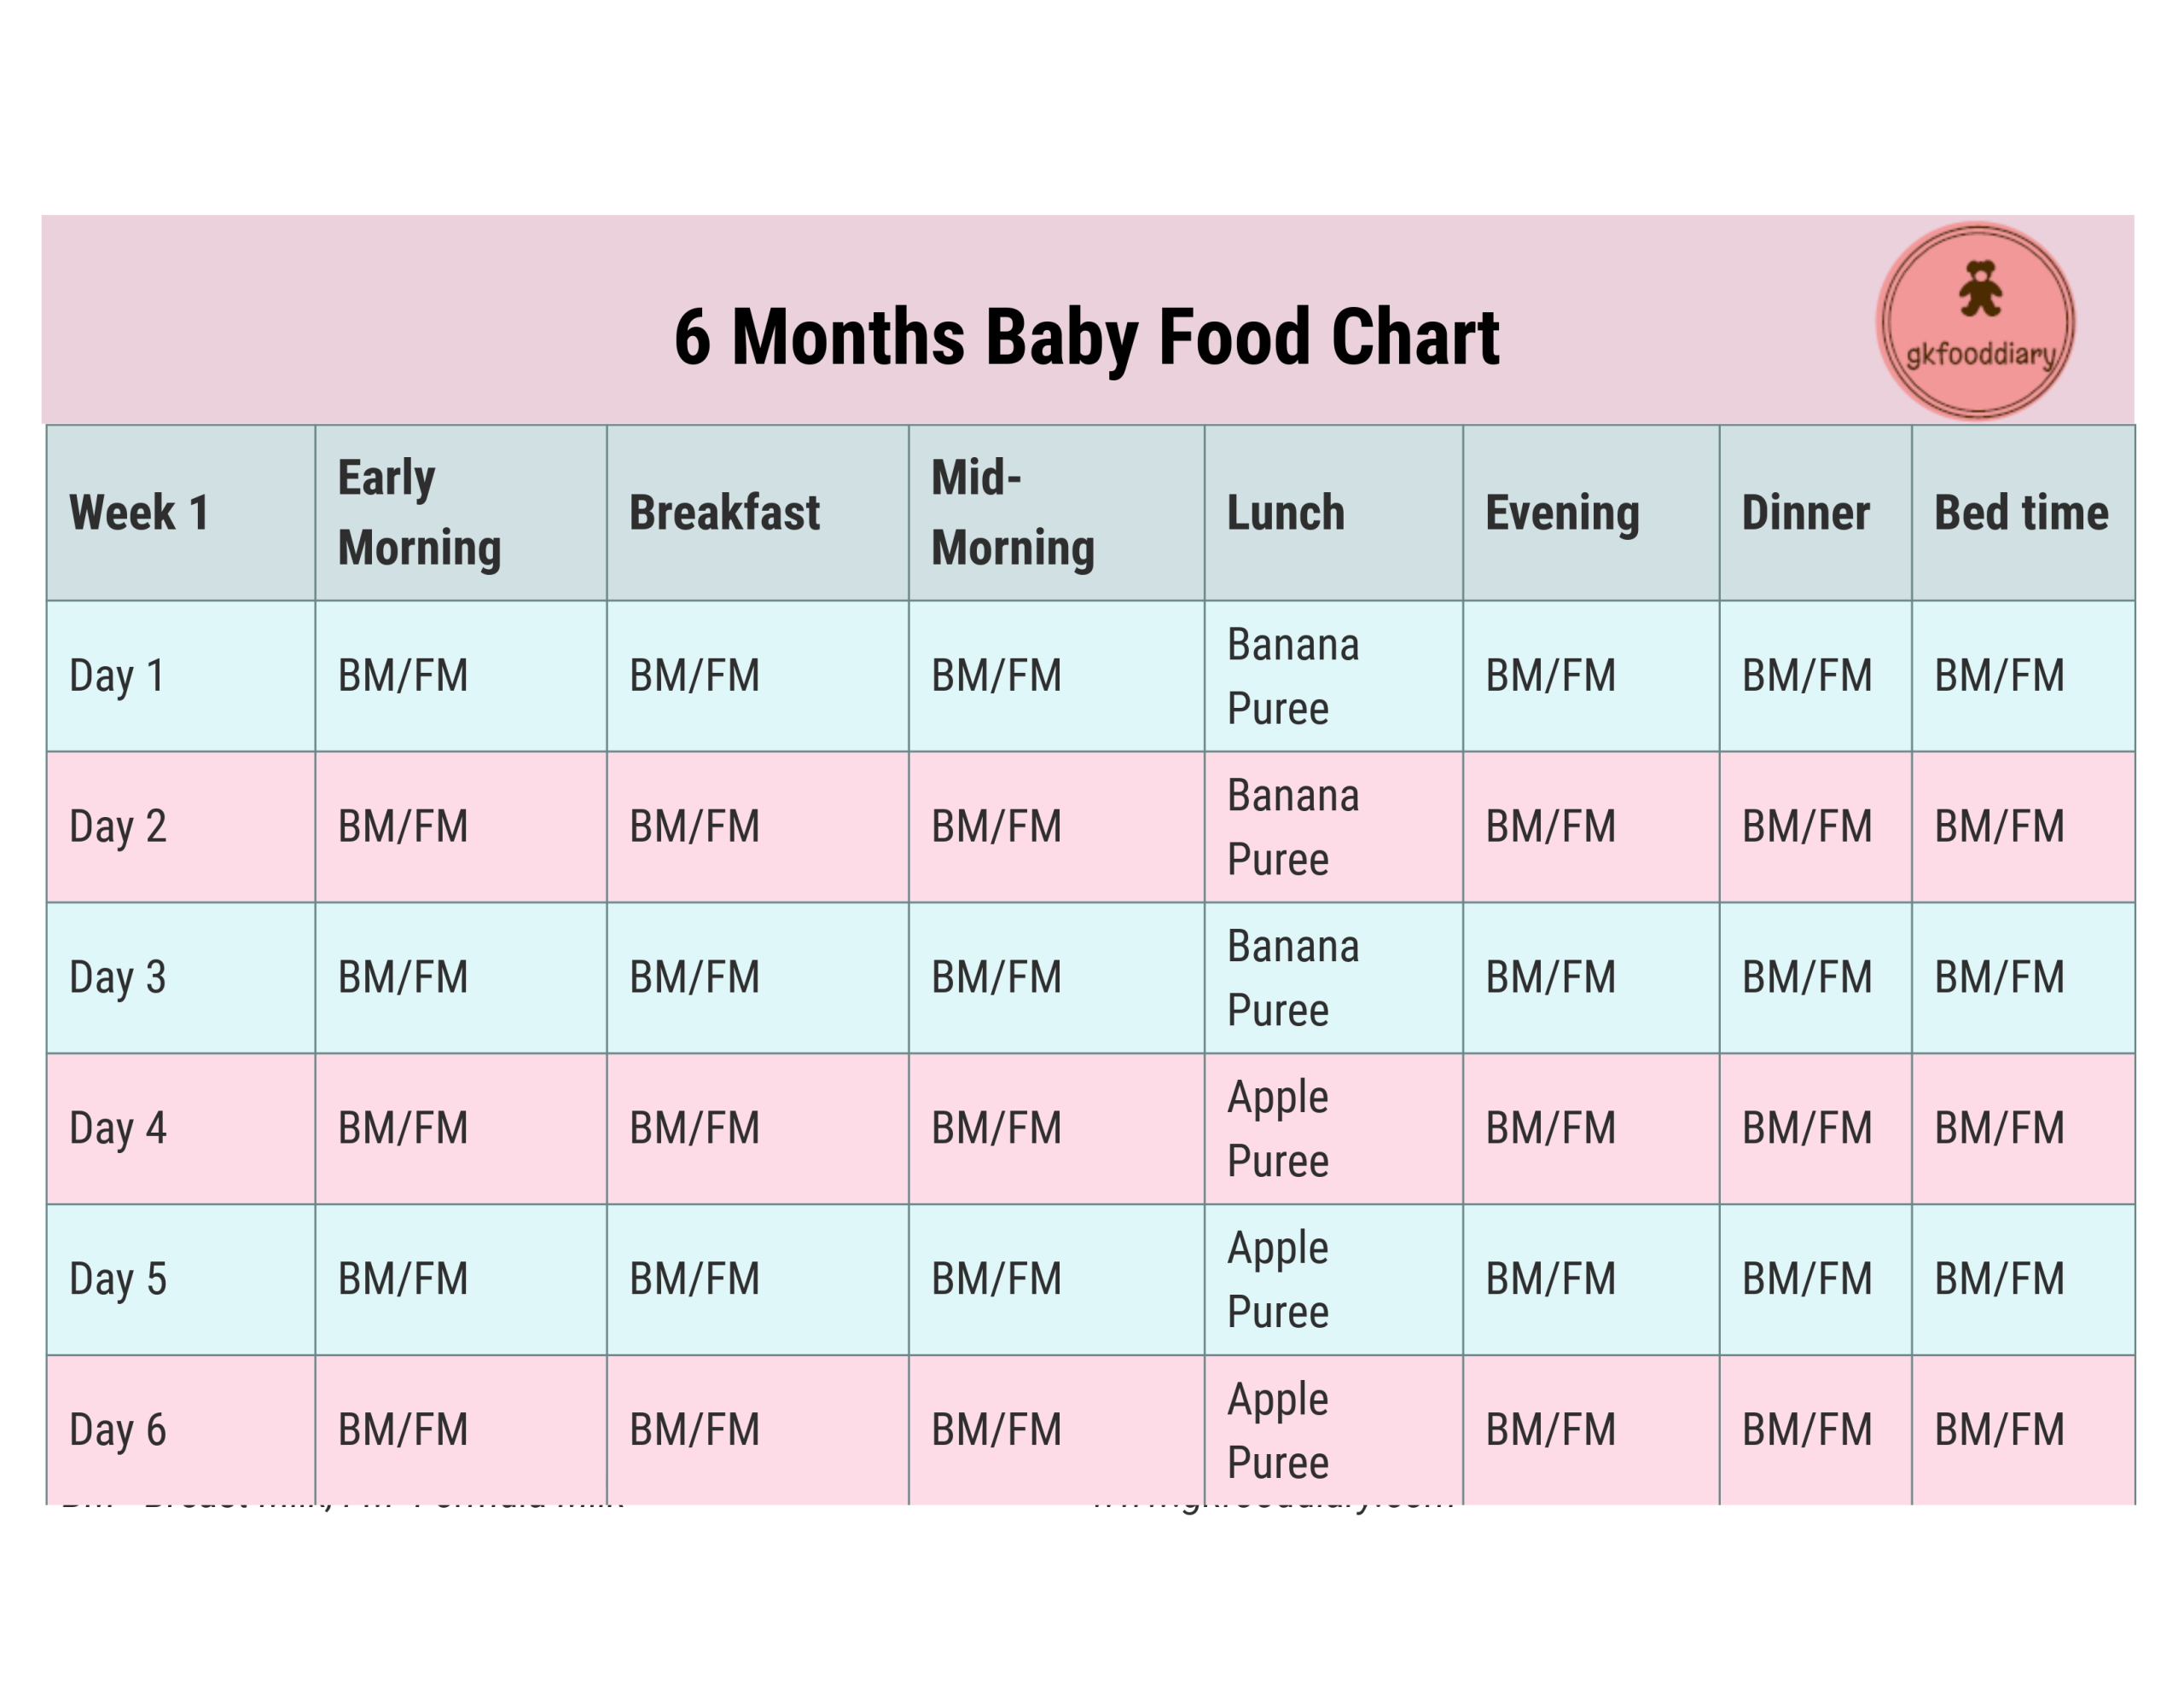 Таблица детского питания для детей в возрасте 6 месяцев, неделя 1